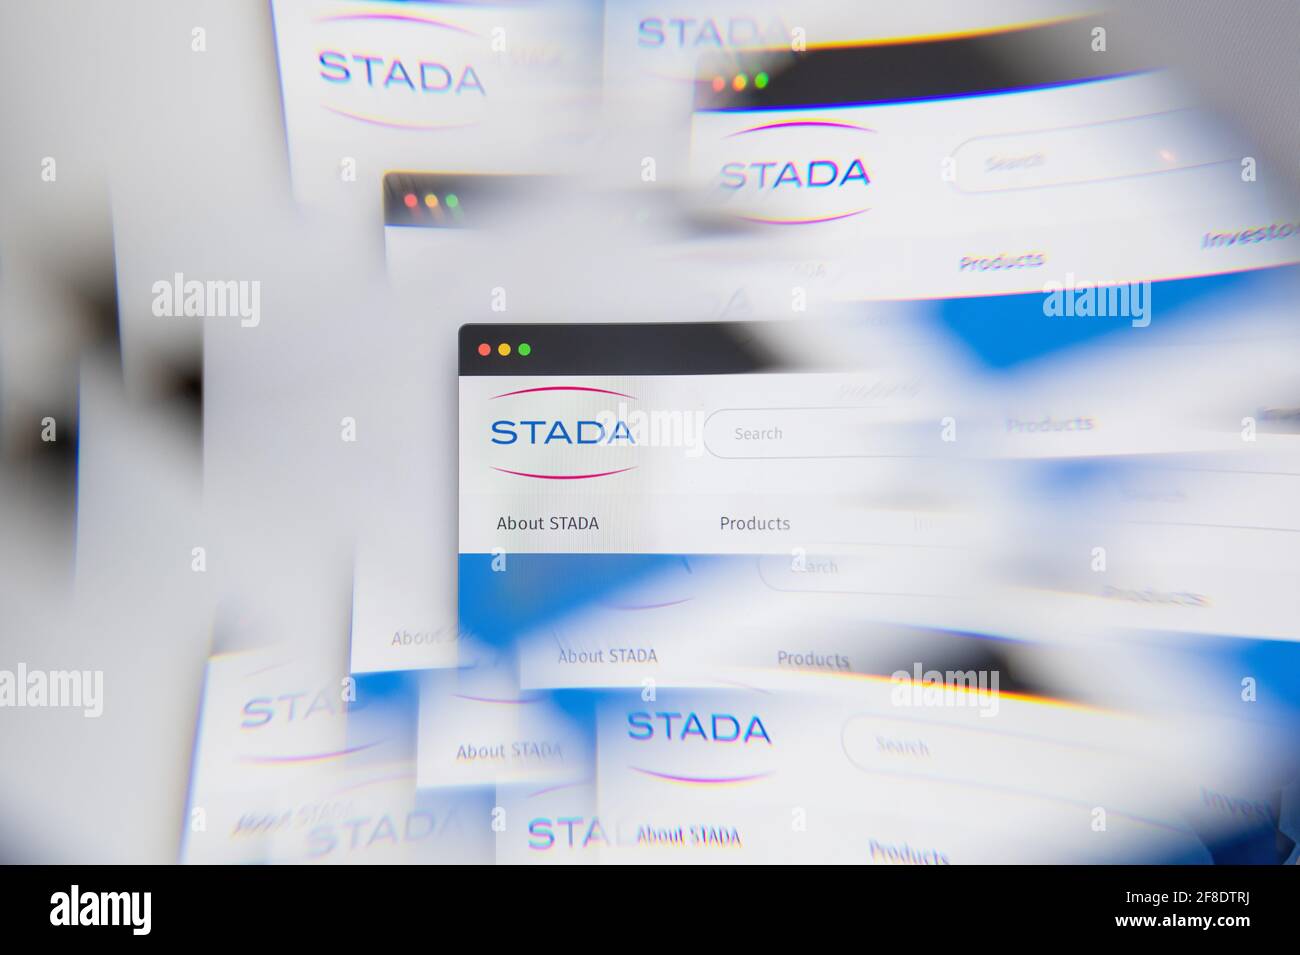 Milan, Italie - 10 AVRIL 2021 : logo Stada Arzneimittel sur écran d'ordinateur portable vu à travers un prisme optique. Image éditoriale d'illustration de Stada Arzneim Banque D'Images